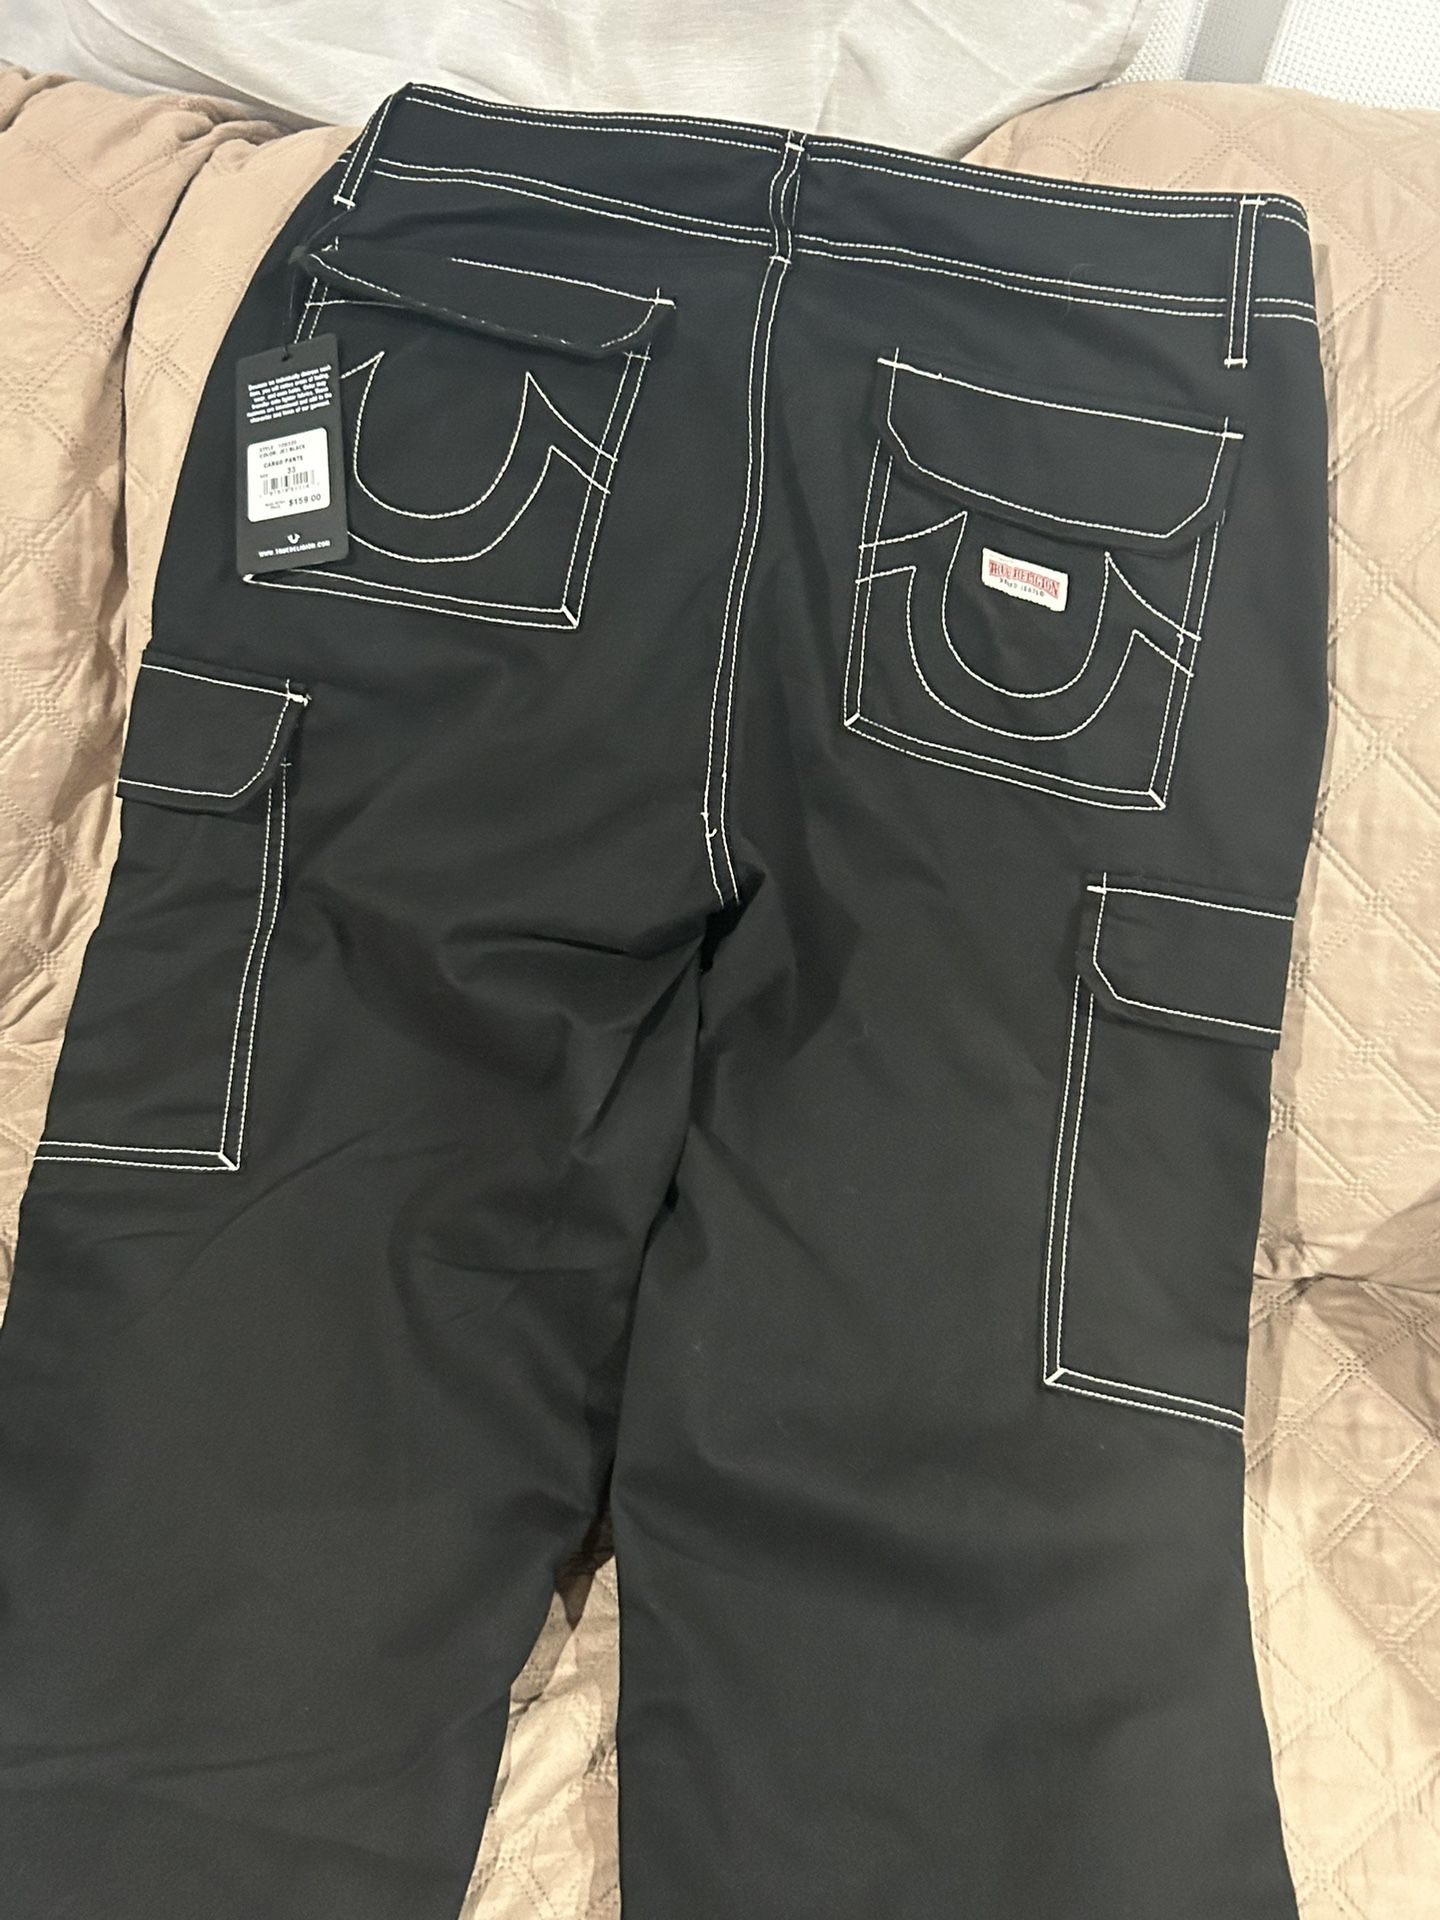 True Religion Cargo Pants (color Jet Black) 